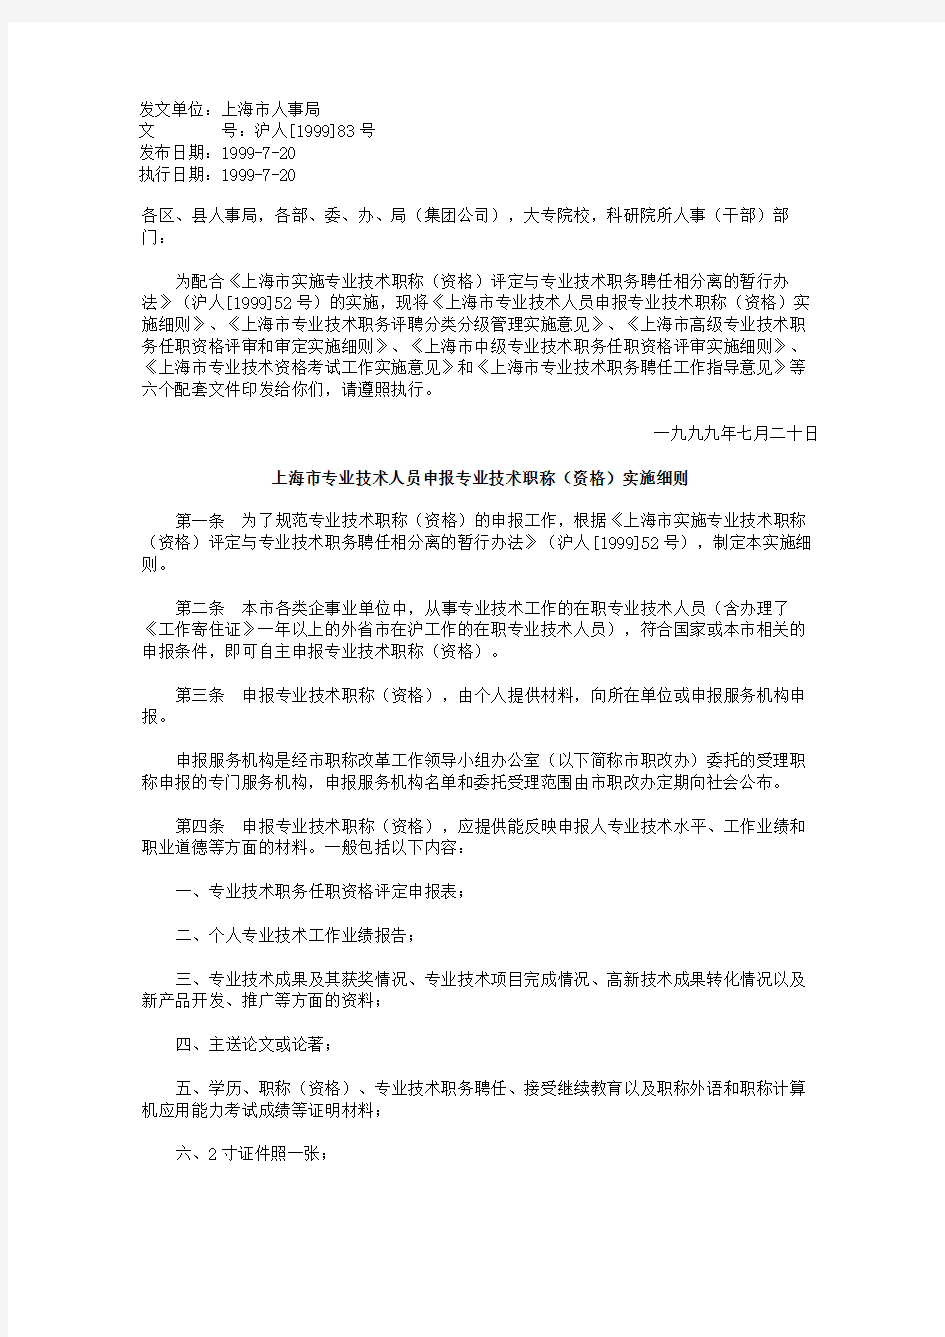 上海市专业技术人员申报专业技术职称资格实施细则